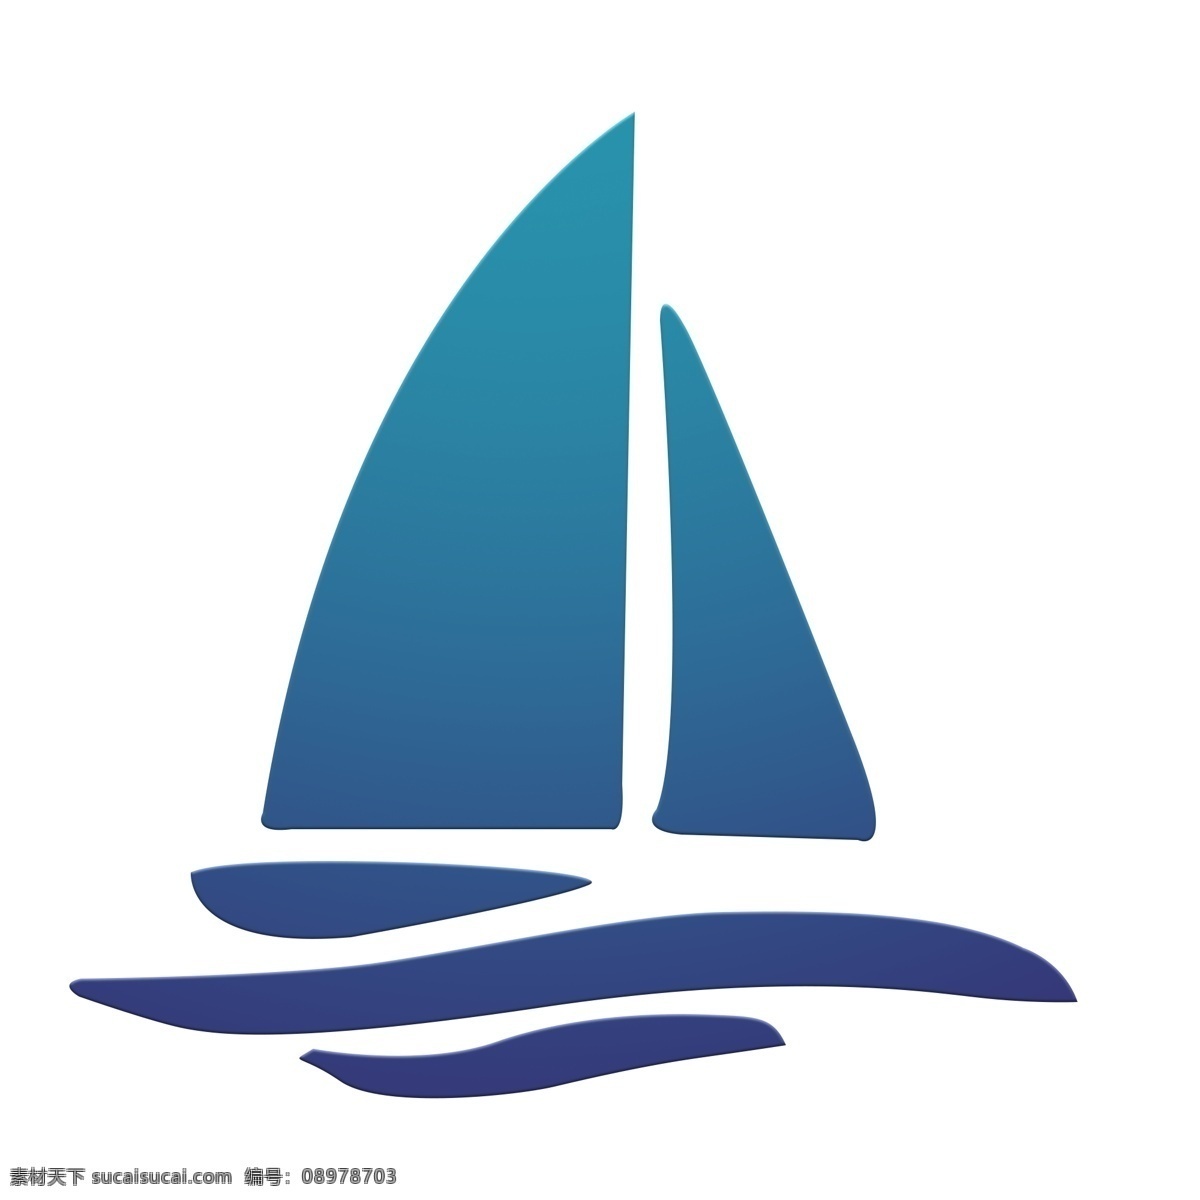 可爱 卡通 手绘 帆船 图标 渐变色 一帆风顺 吉祥 祝福 碧海 蓝天 乘船 船帆 水上设施 交通工具